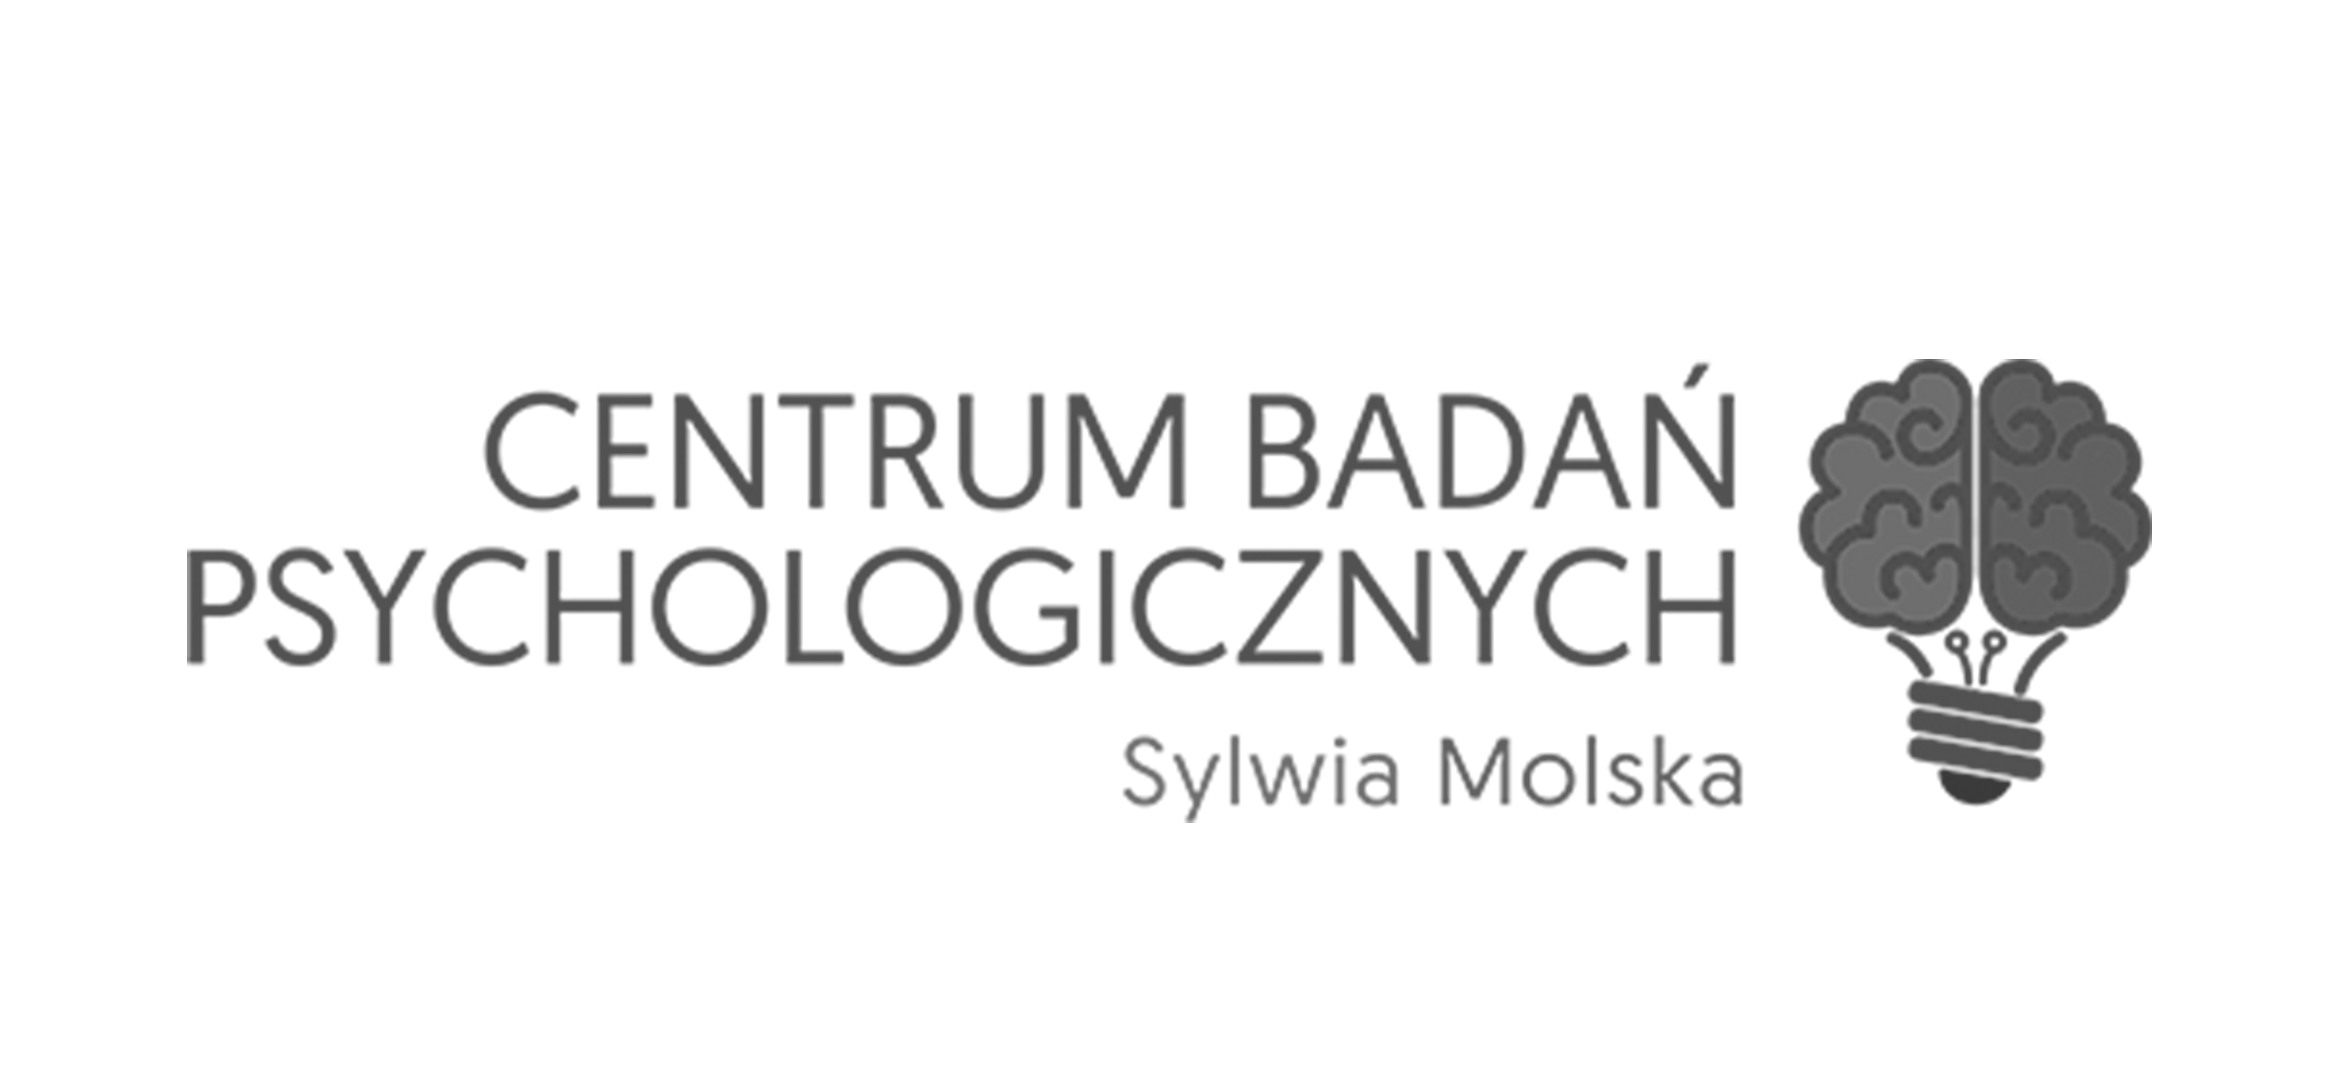 Centrum Badań Psychologicznych Sylwia Molska